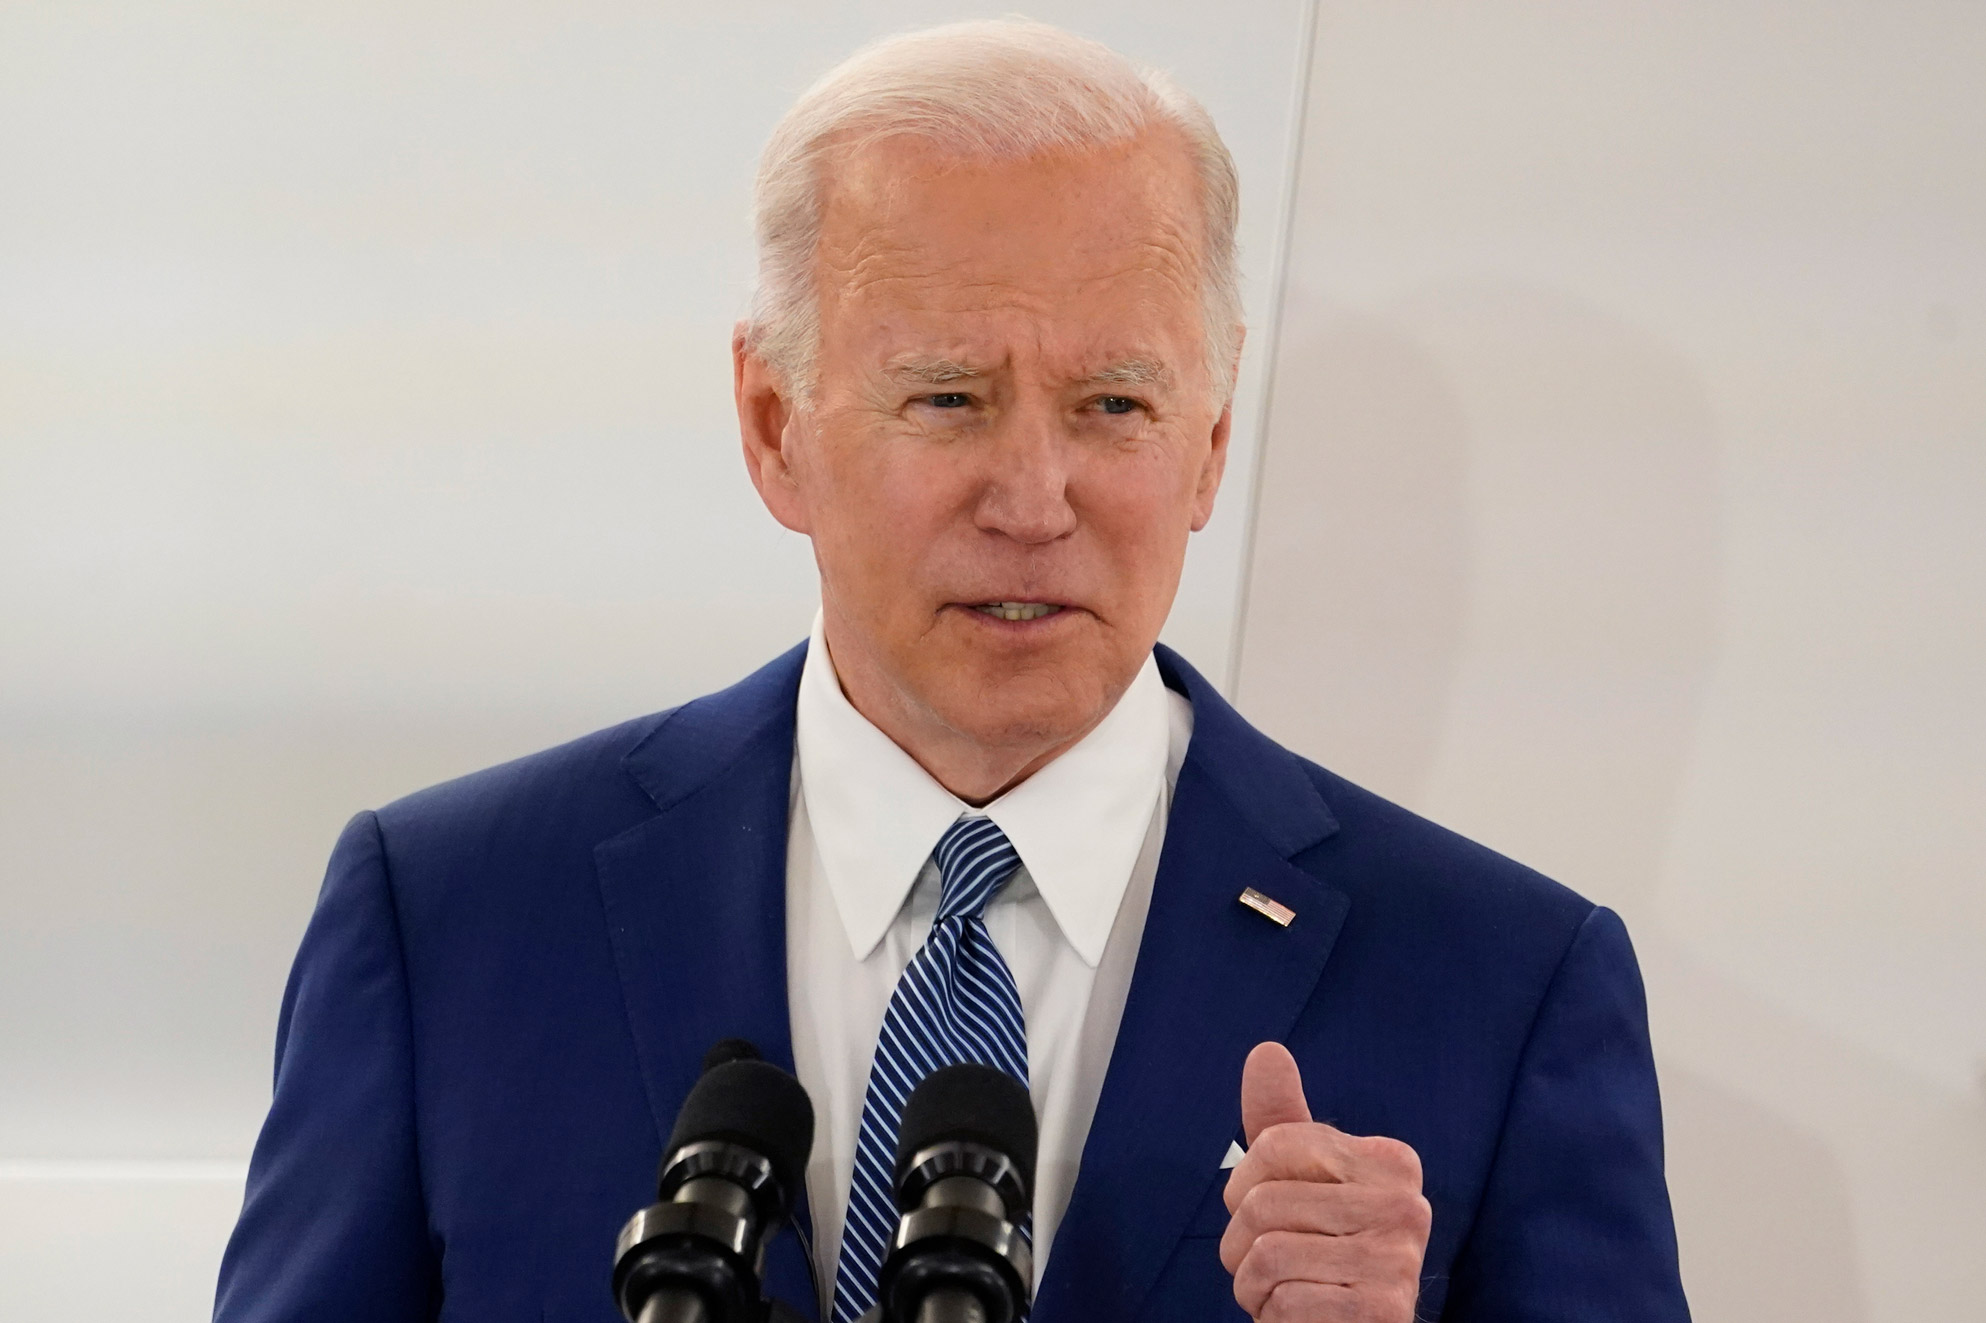 President Joe Biden speaks on Monday in Washington.